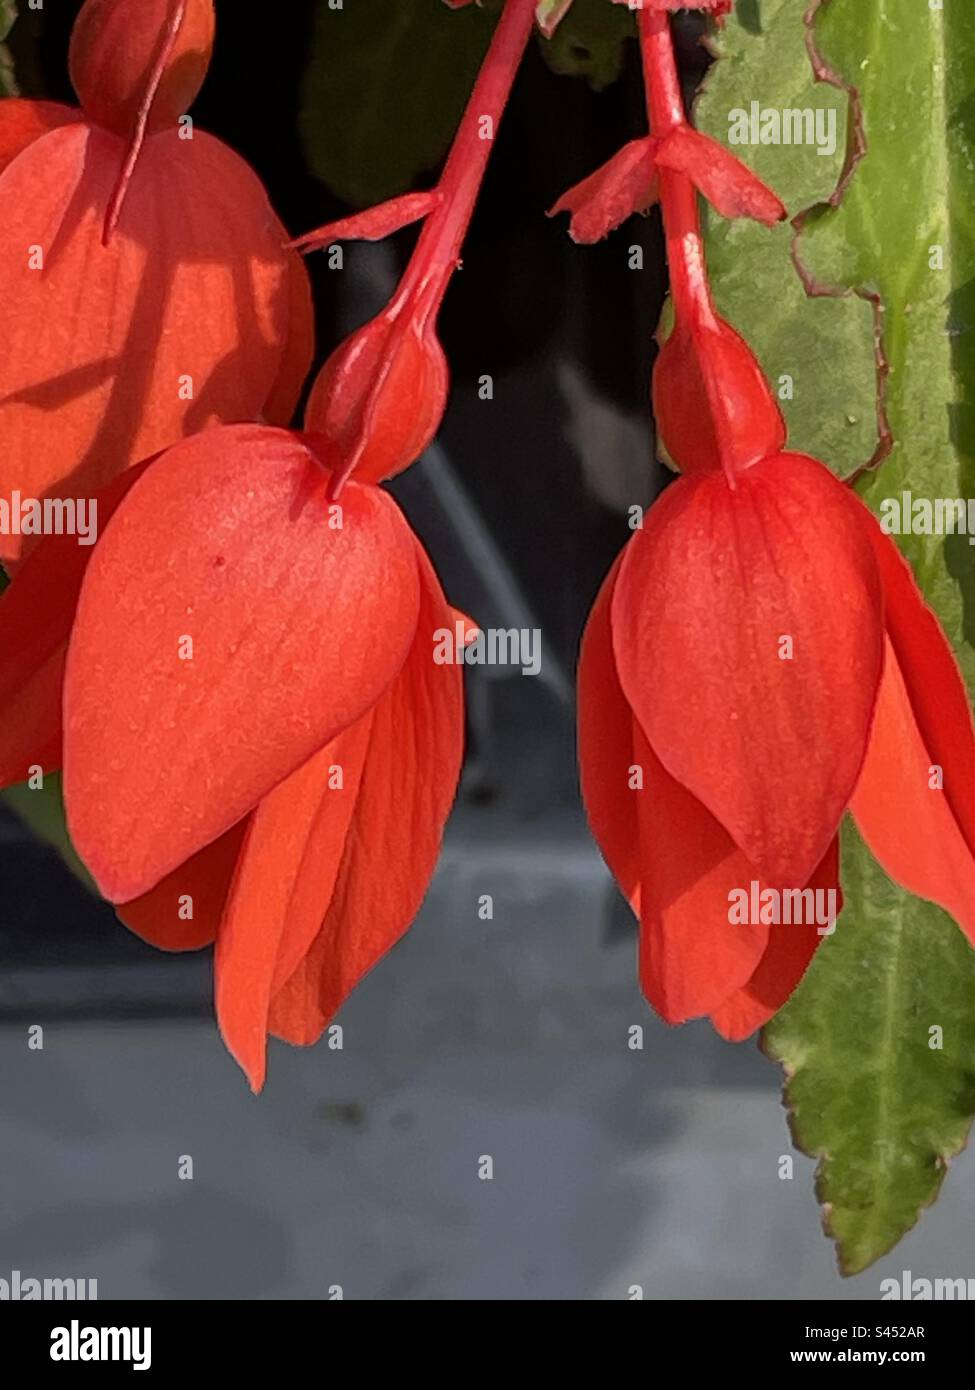 Bellissimi fiori di goccia di colore rosso perfetti per appendere i cesti Foto Stock